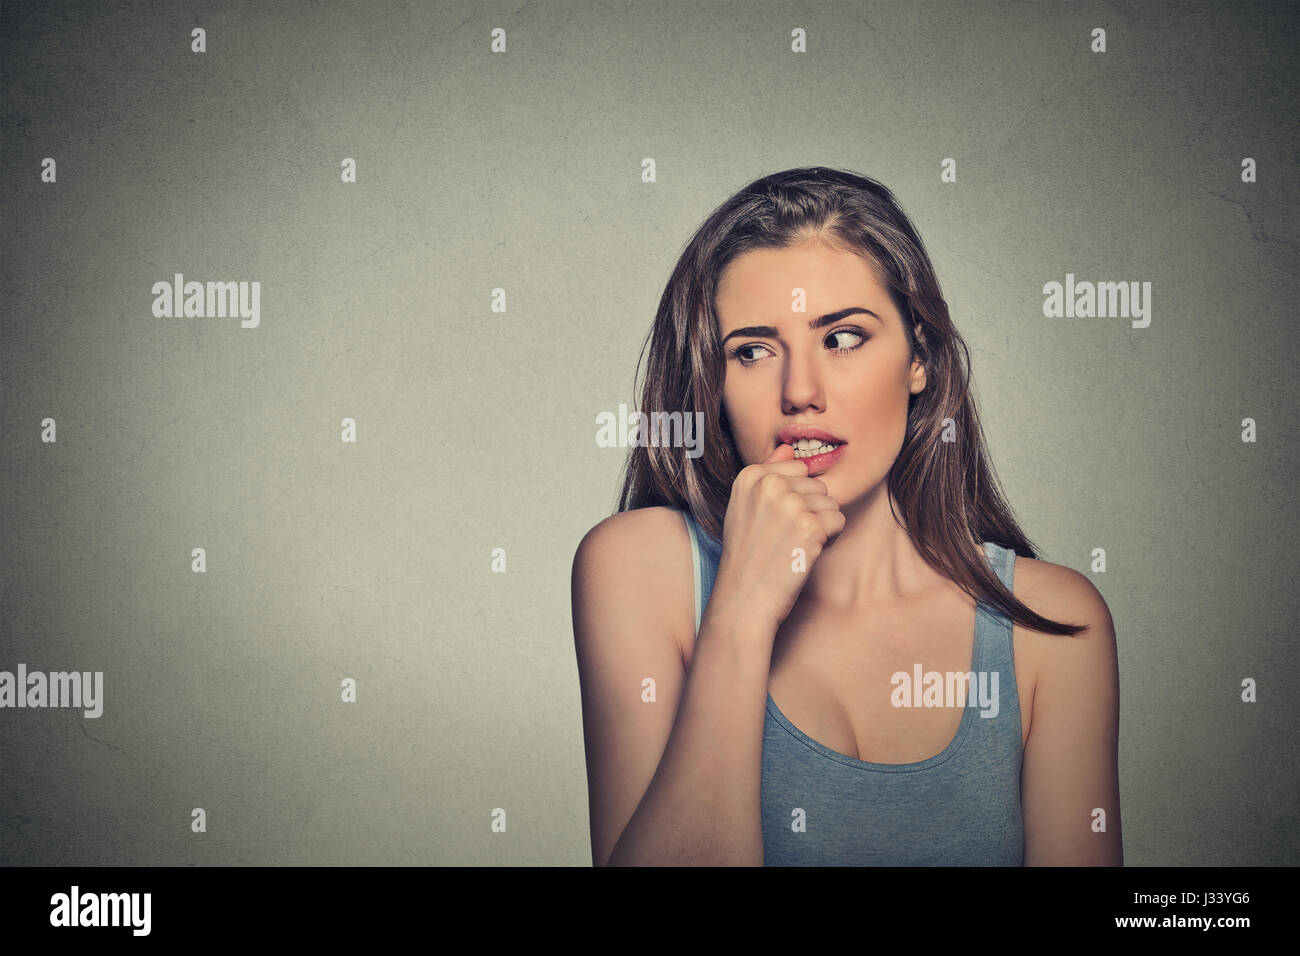 Closeup Portrait nervös suchen junge Frau beißen ihre Fingernägel verlangen etwas ängstlich isoliert textfreiraum grau hinterlegt. Negativen menschlichen emot Stockfoto